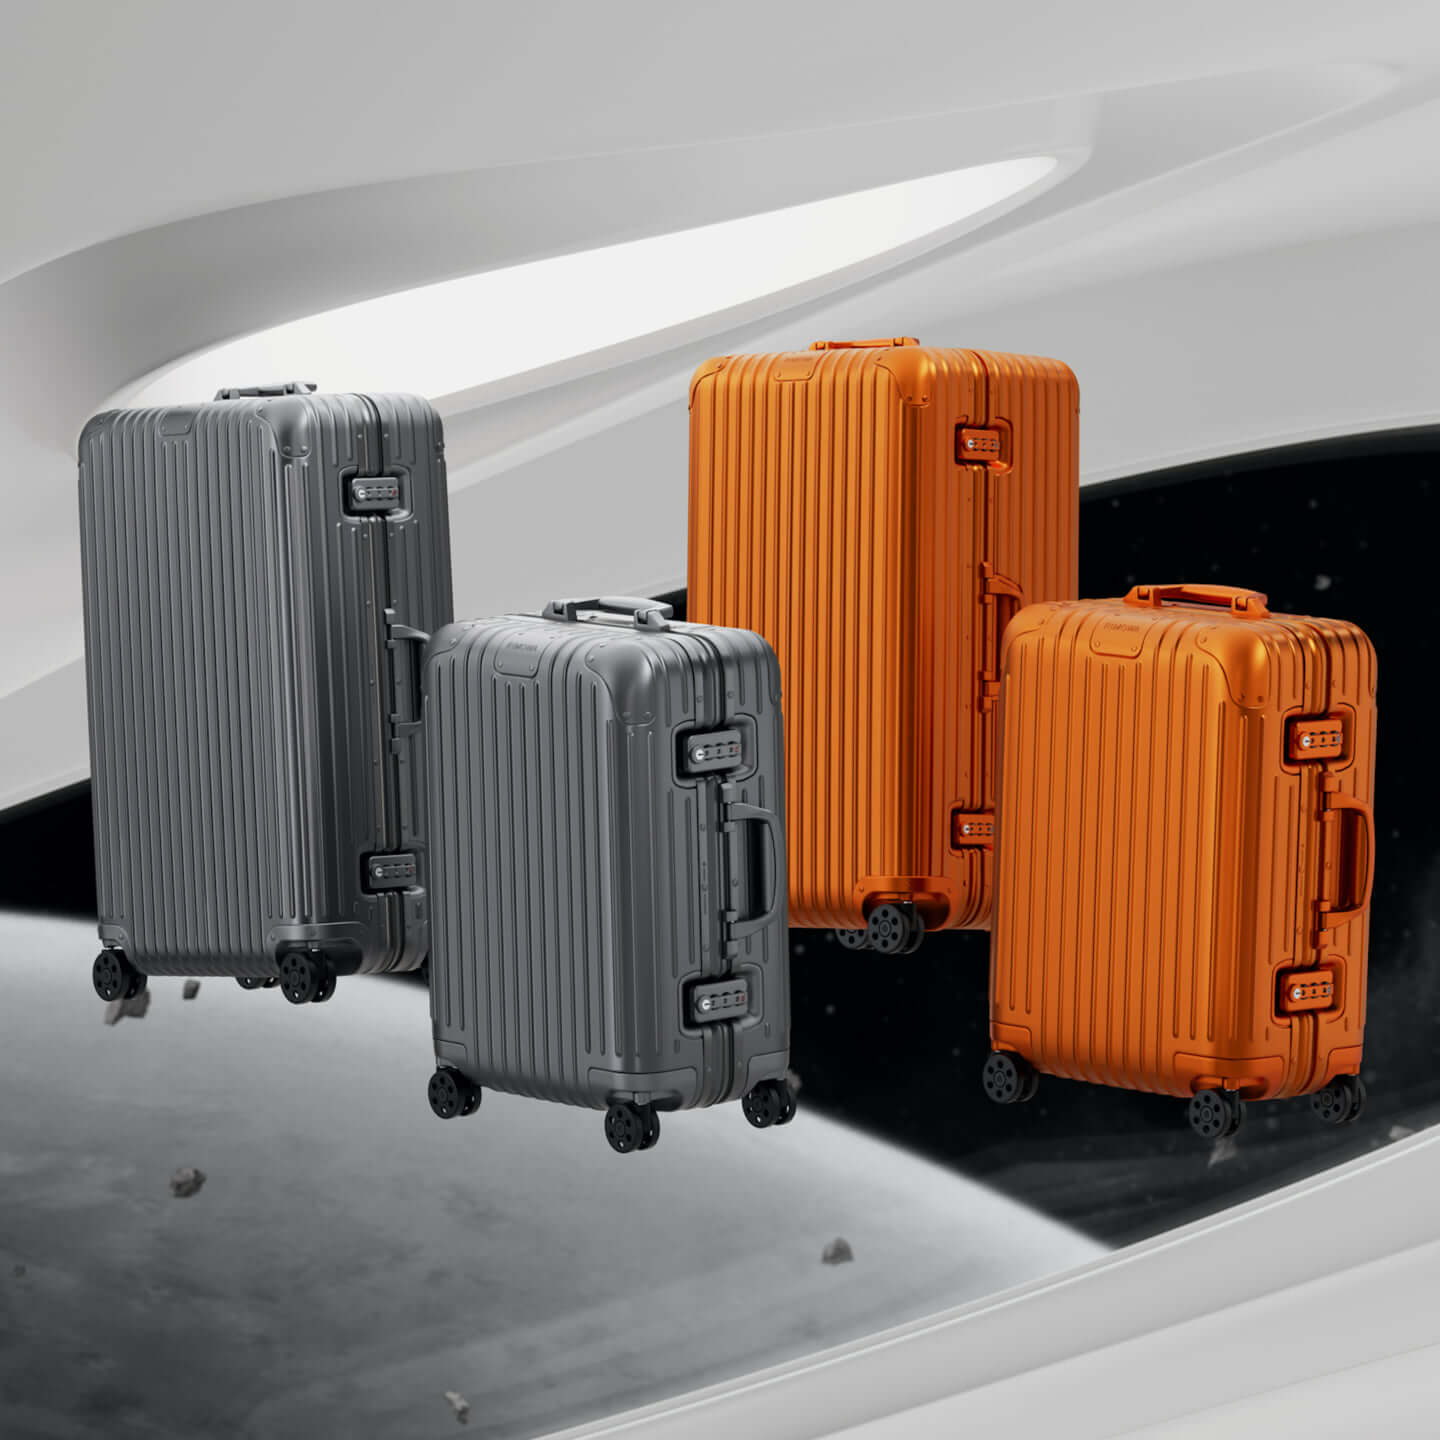 RIMOWAを代表するアルミニウム合金製スーツケースの新色が発売 